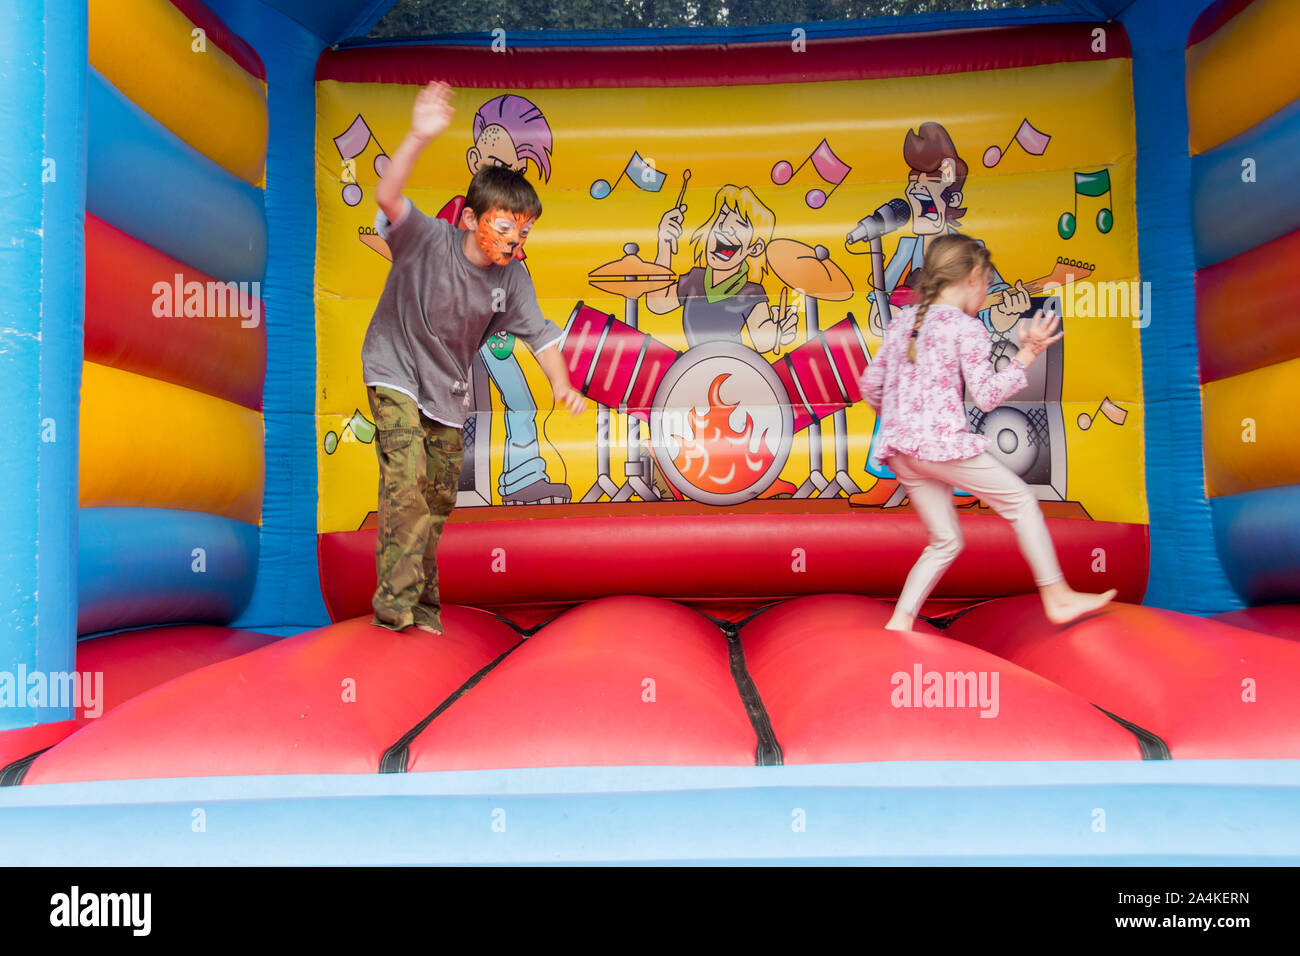 Sheffield, Großbritannien: 1 Aug 2016: Zwei Kinder springen auf einer Hüpfburg aufblasbare Spielzeug in St Mary's Church Family Fun Day Stockfoto